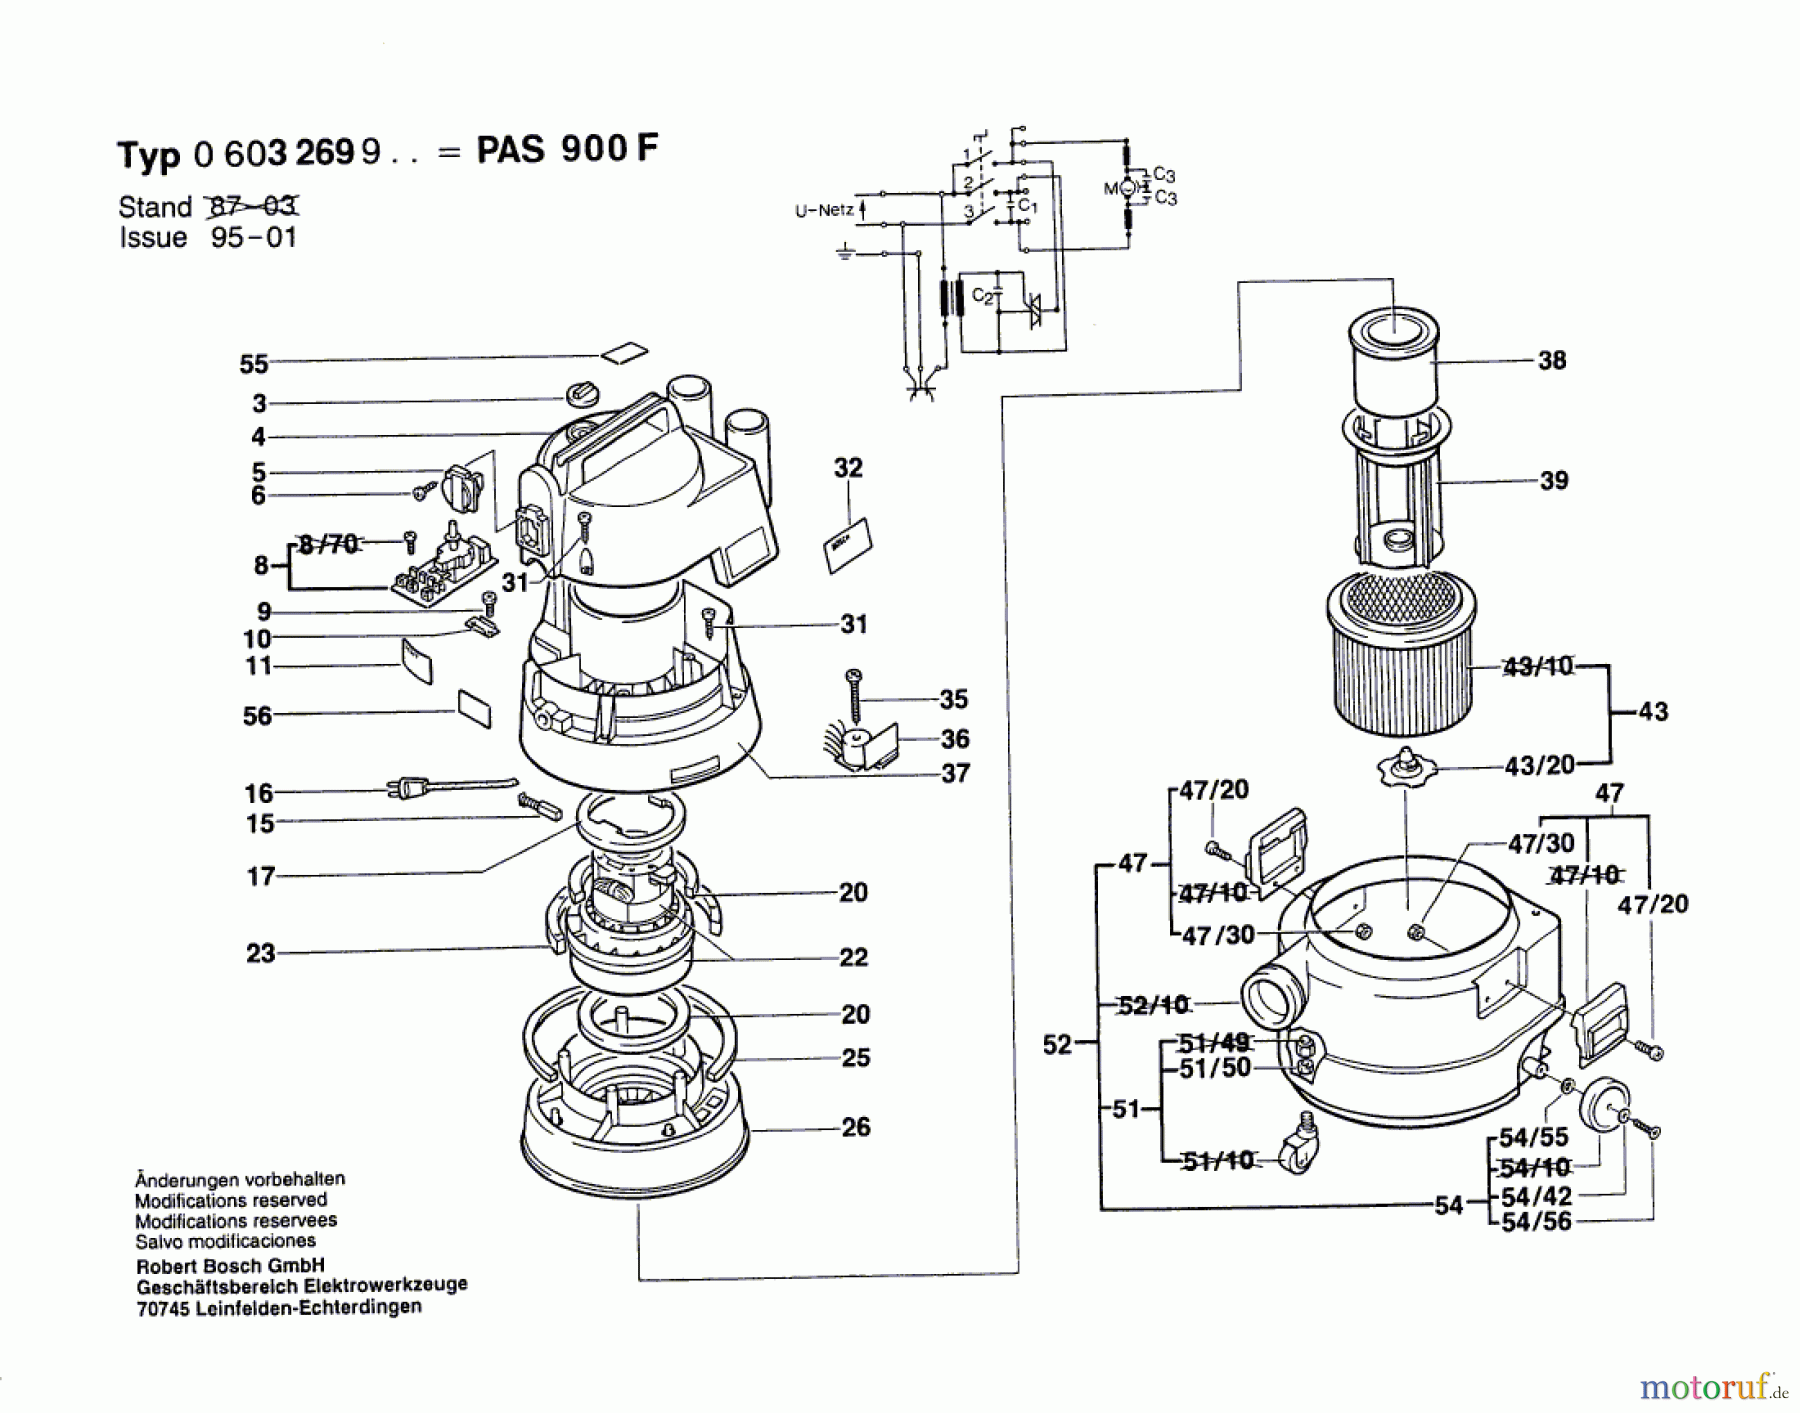  Bosch Werkzeug Allzwecksauger PAS 900 F Seite 1